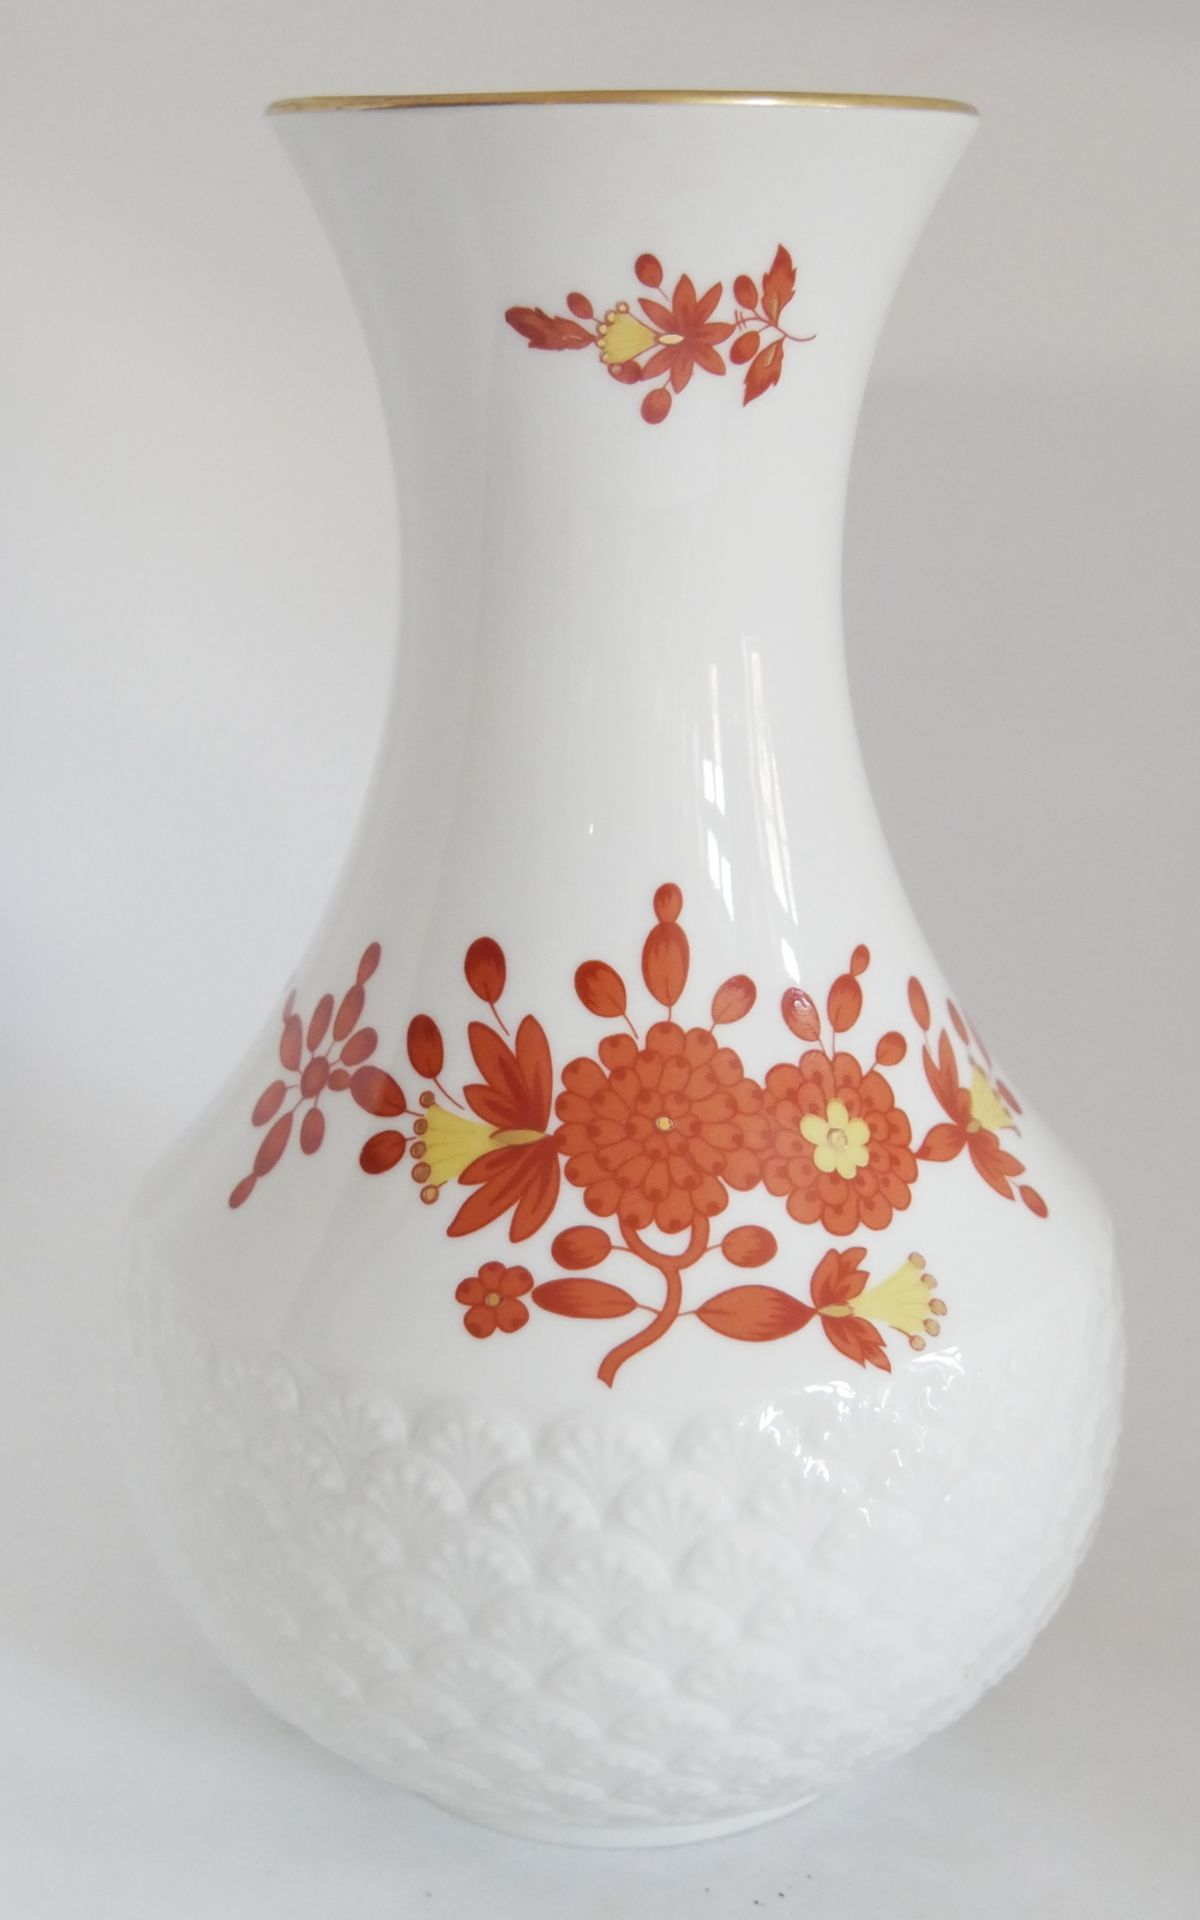 Porzellan Vase Falkenberg Germany ein Produkt der Hutschenreuther Gruppe. Nr. 59 mit floralen Dekor.